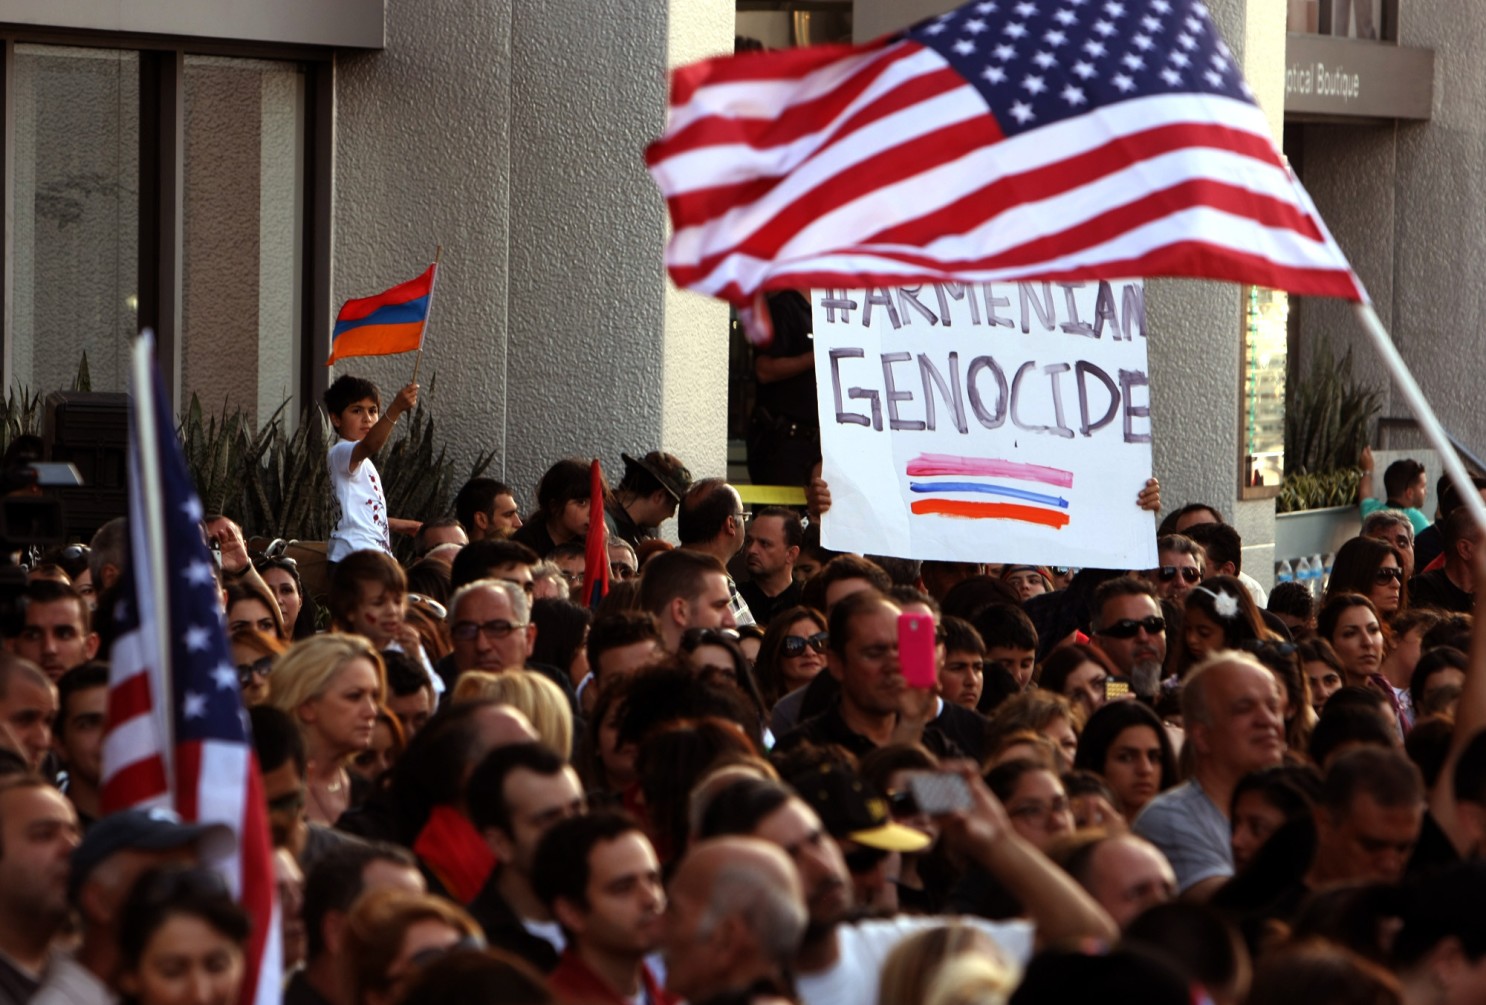 AHEPA Lauds President Biden’s Recognition of Armenian Genocide